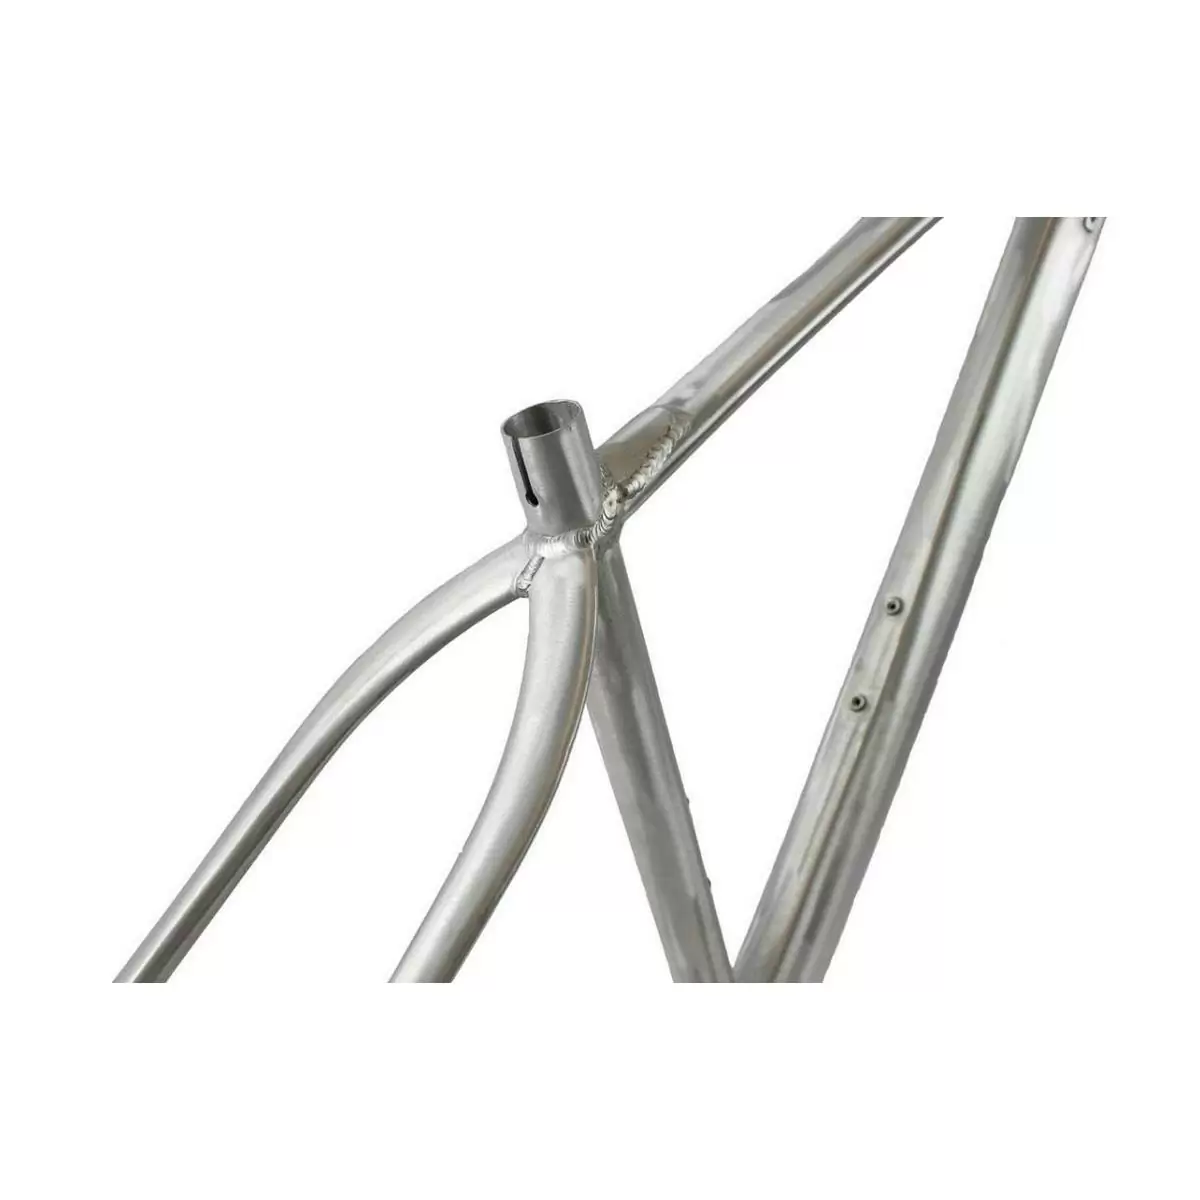 Cuadro Mtb Raw aluminio 29'' Boost TA12x148 tapered BSA talla 52 #3